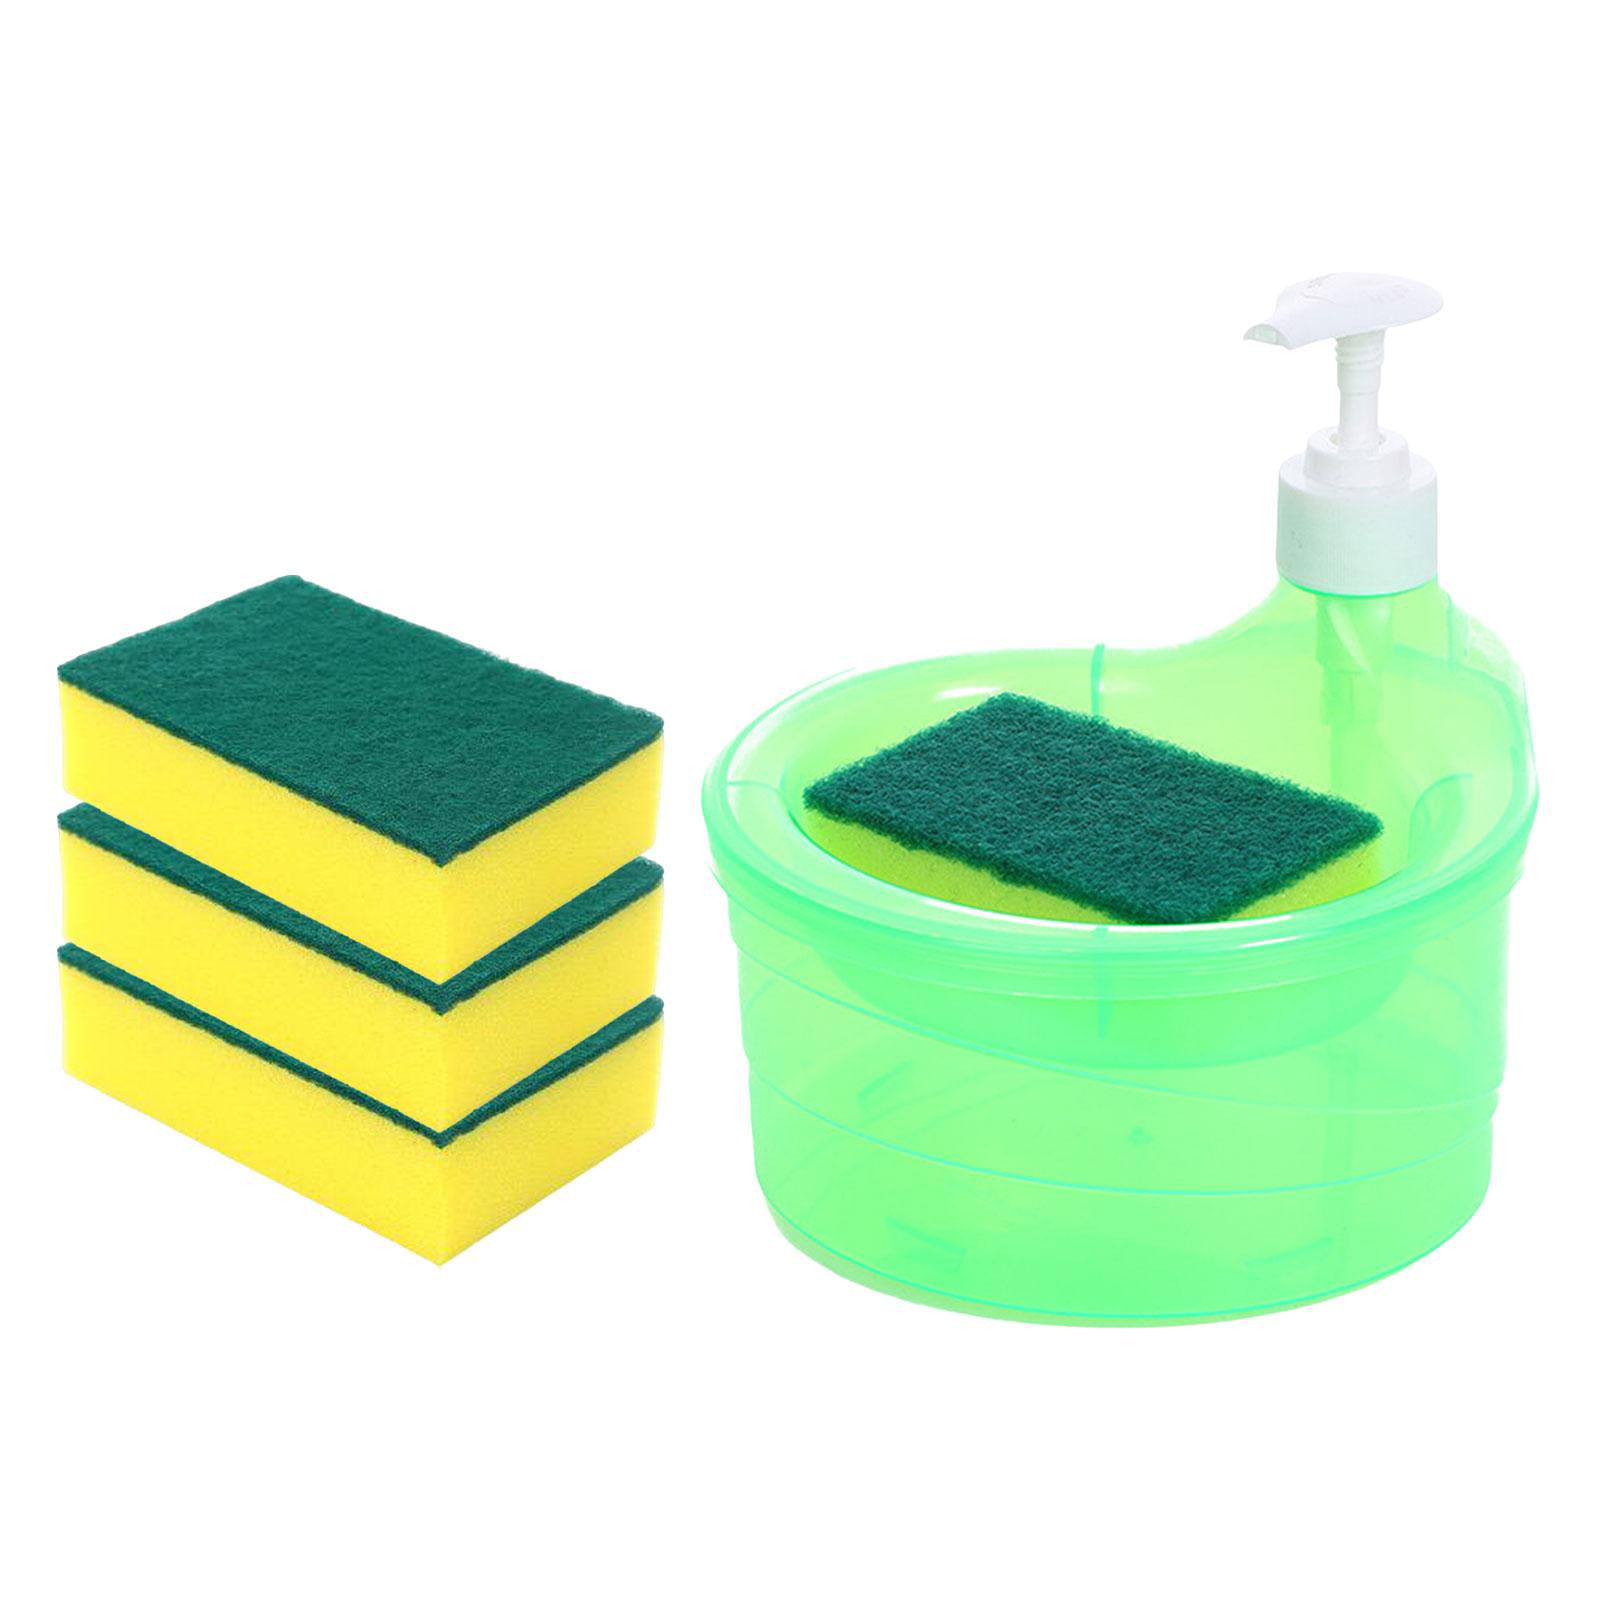 Dish Soap Dispensing Sponge Brush – Emmeistar